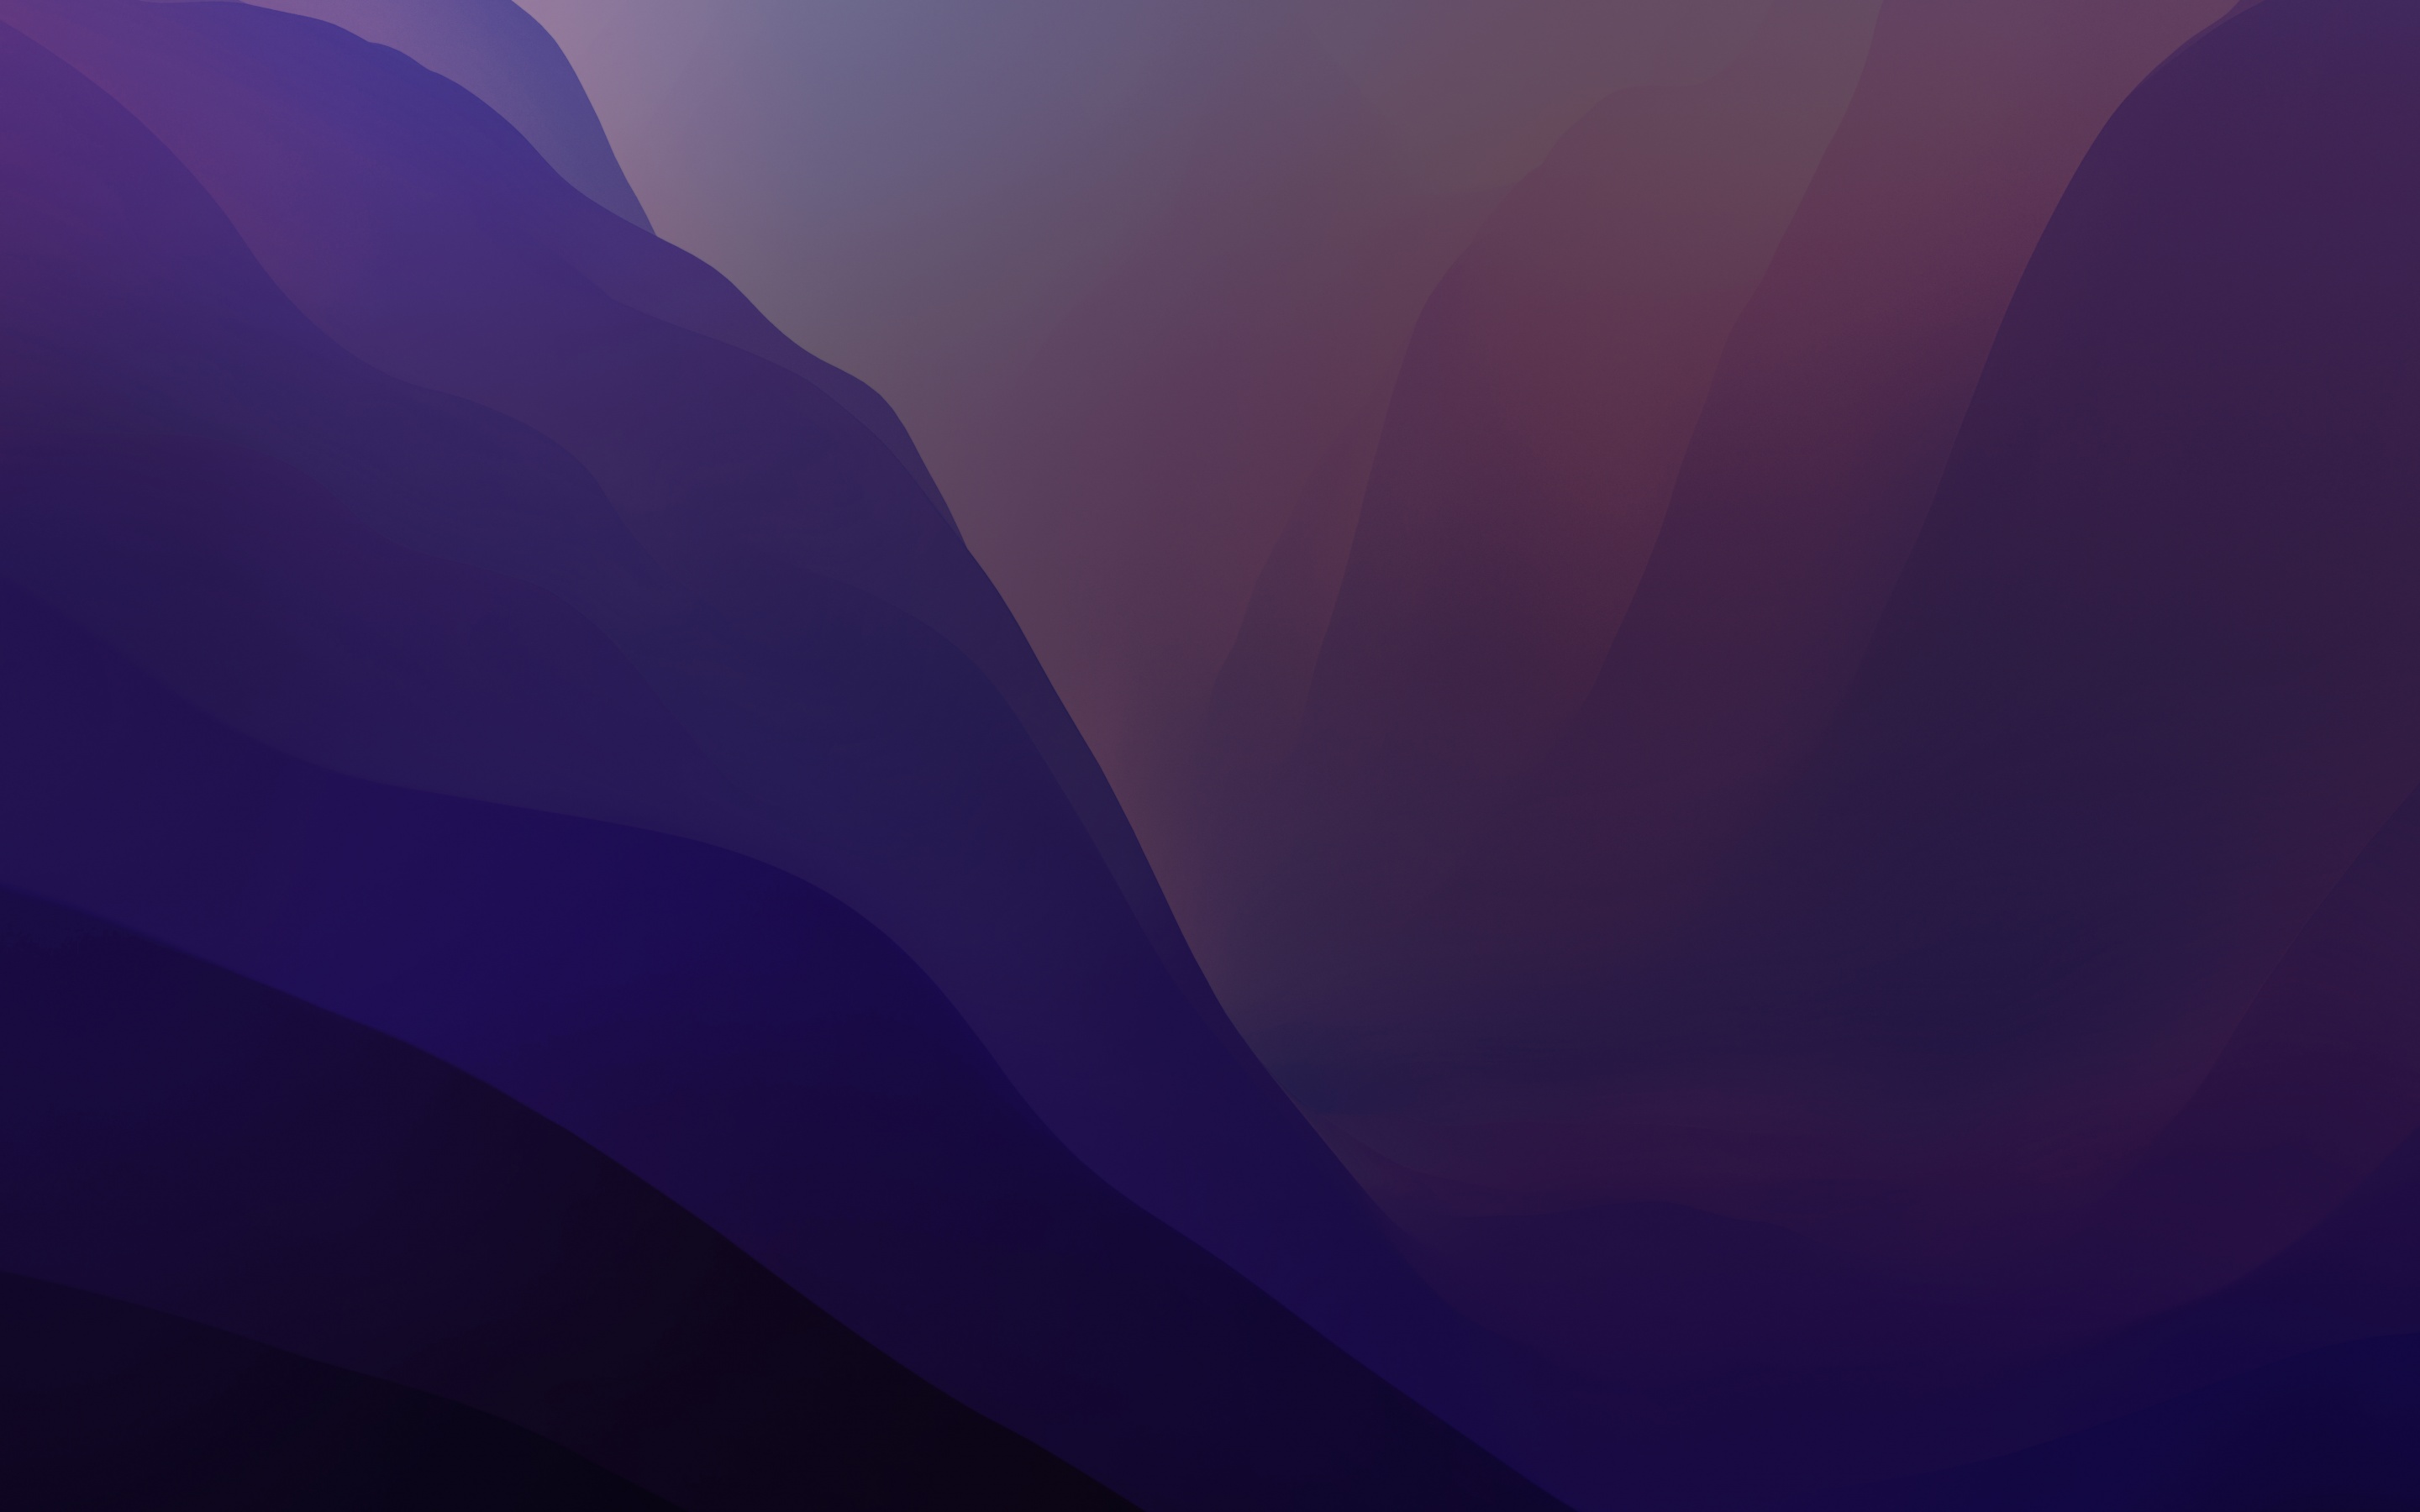 Tưởng tượng mình đang khám phá một cảnh vật hoàn toàn mới với hình nền macOS Monterey tím gradient 4K. Các sắc màu tím pha trộn tinh tế tạo nên một không gian hoàn hảo, từ màu tím than đến tím sáng. Bạn sẽ không thể rời mắt khỏi màn hình của mình với màu sắc đầy hứa hẹn này.